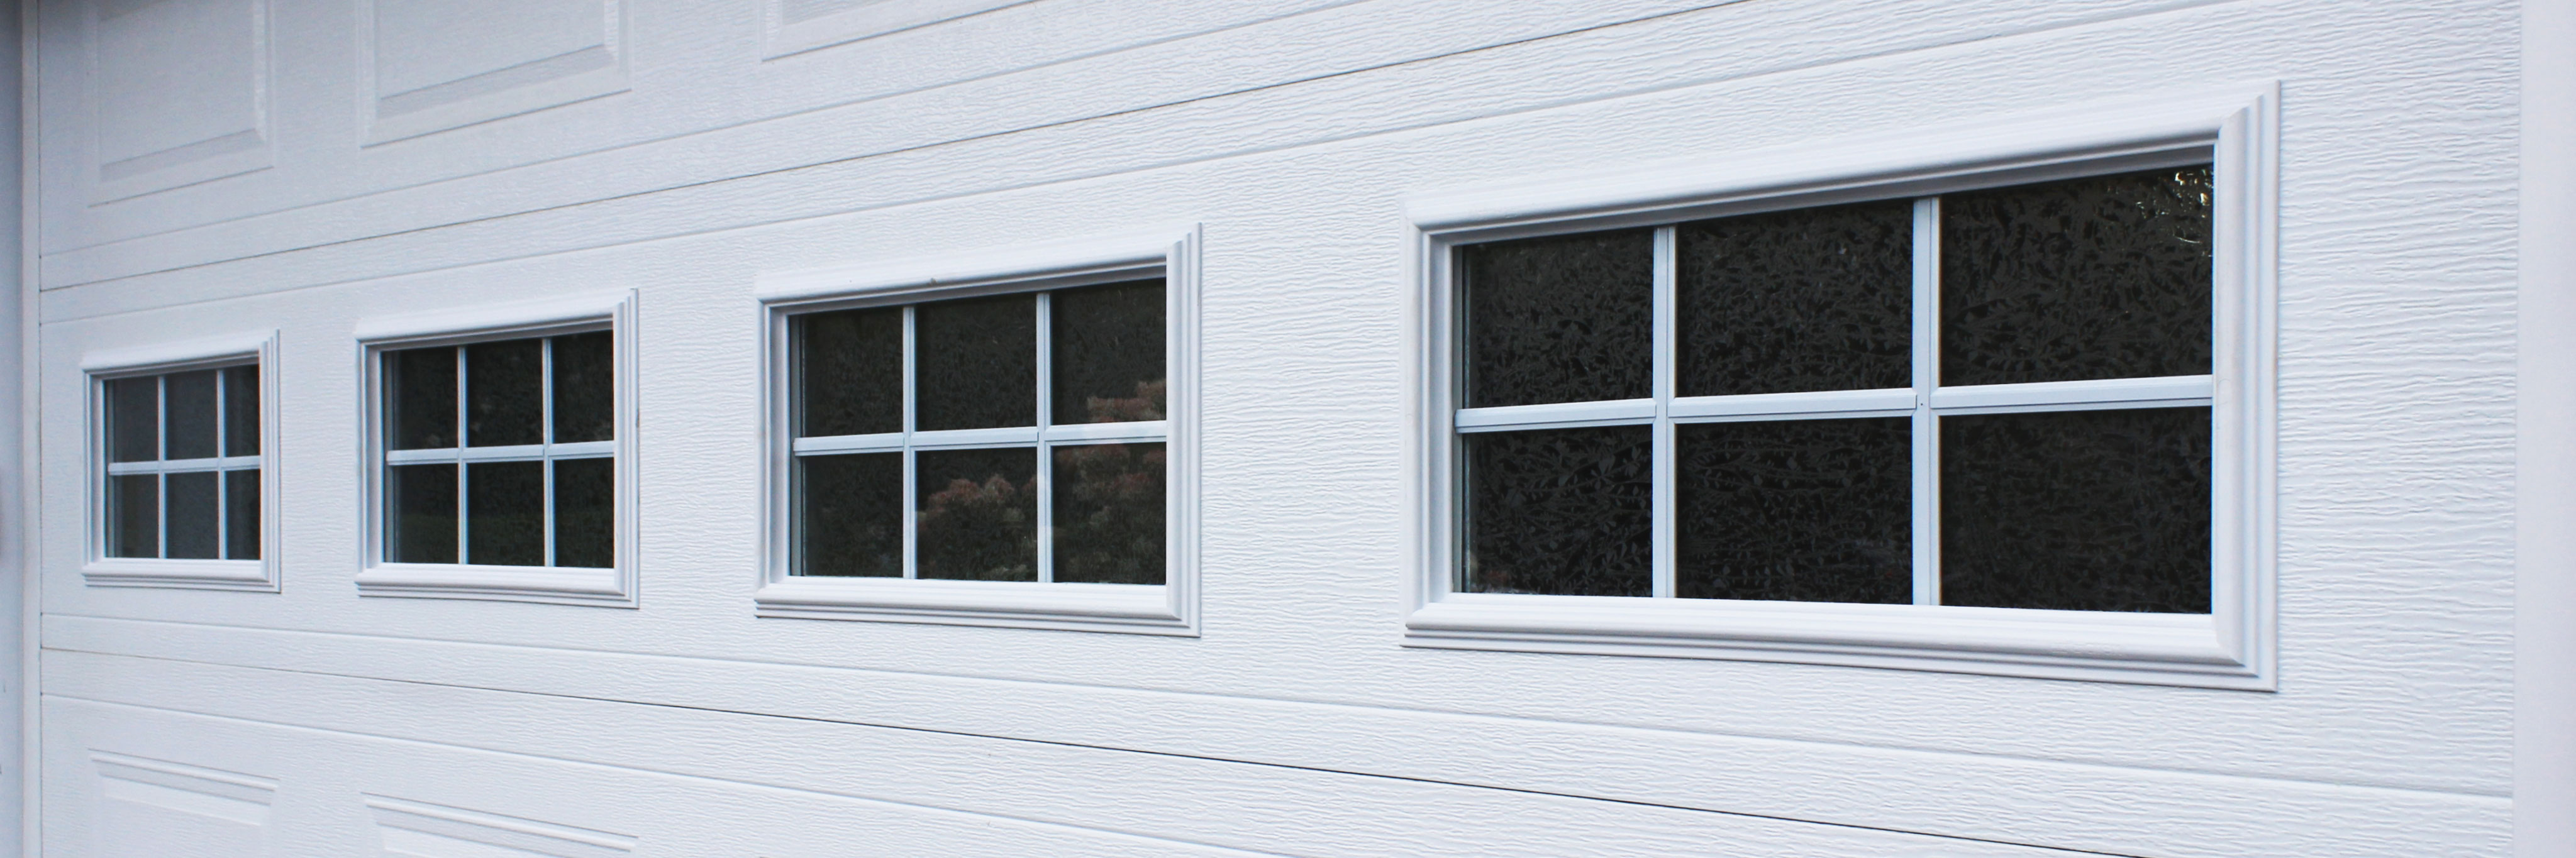 Thermal Windows To Your Garage Door, Replacing Garage Door Window Inserts